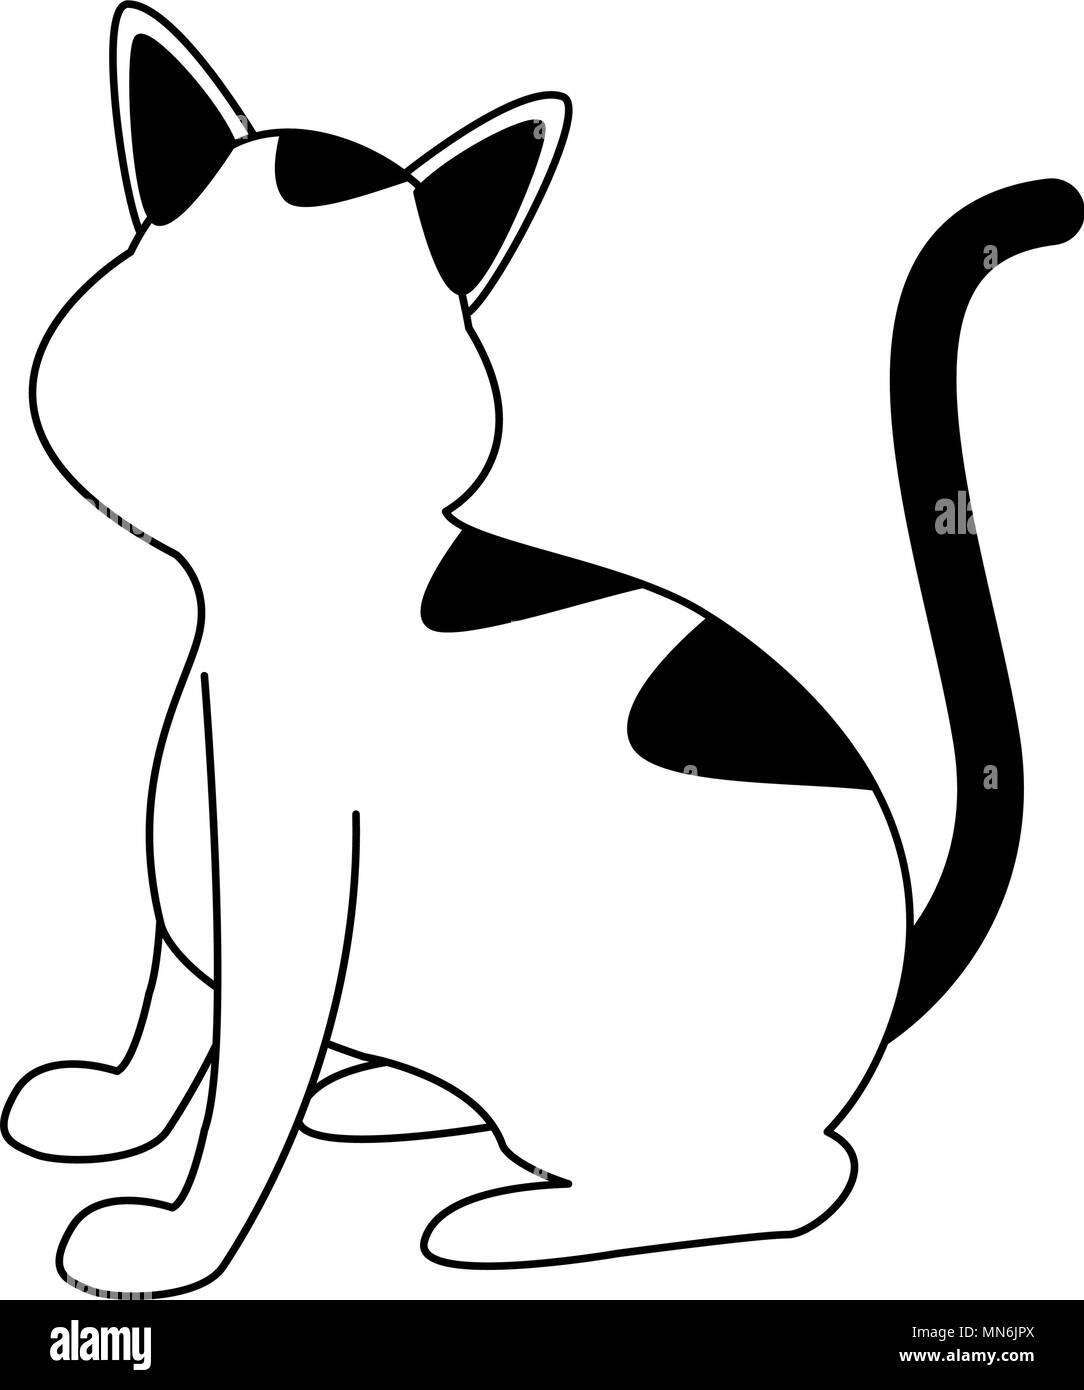 Süße Katze Cartoon in den Farben Schwarz und Weiß Stock-Vektorgrafik - Alamy